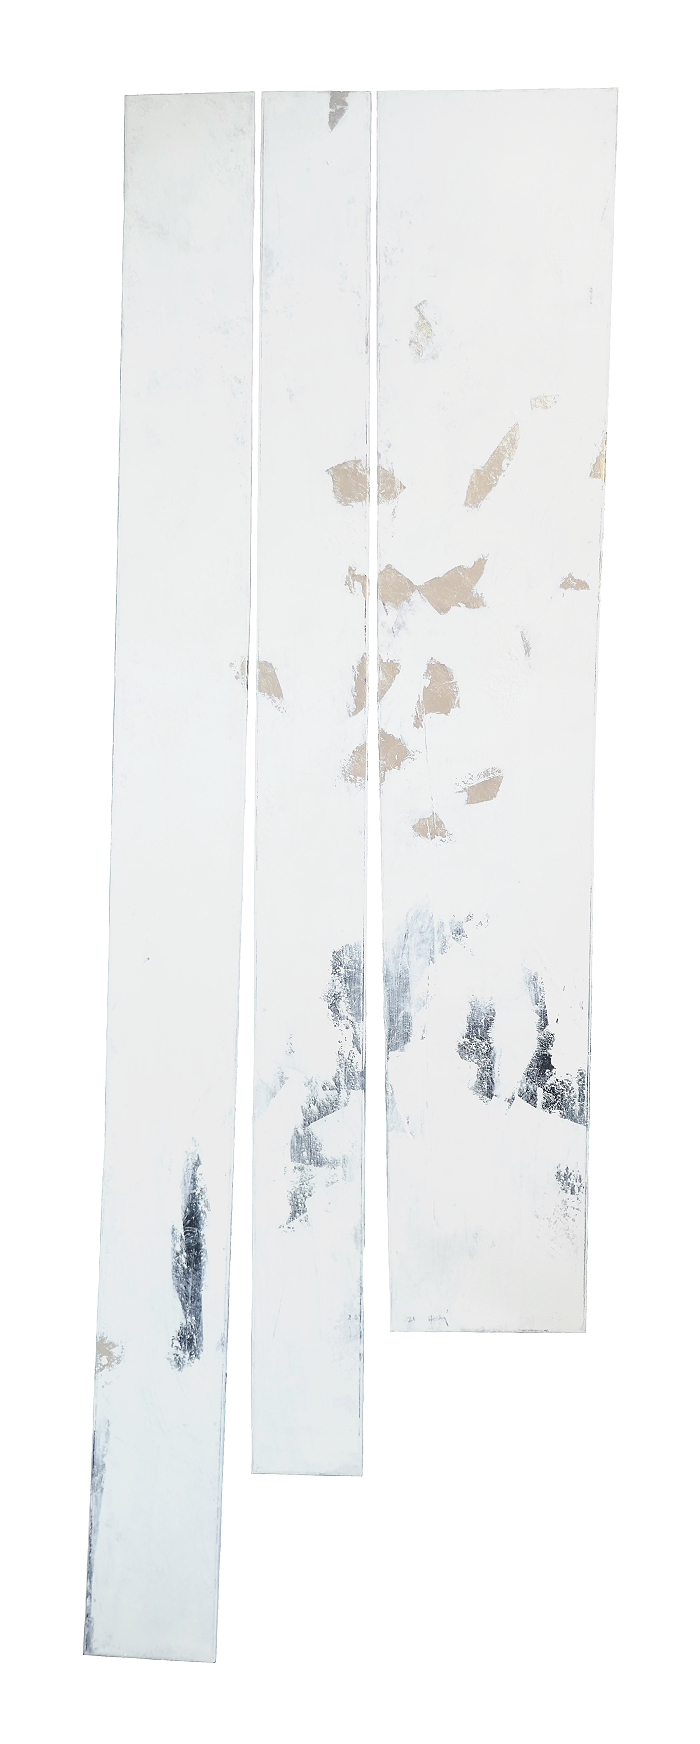 Öl, Palladium auf Leinwand • oil,  palladium on canvas 91 x 287 cm